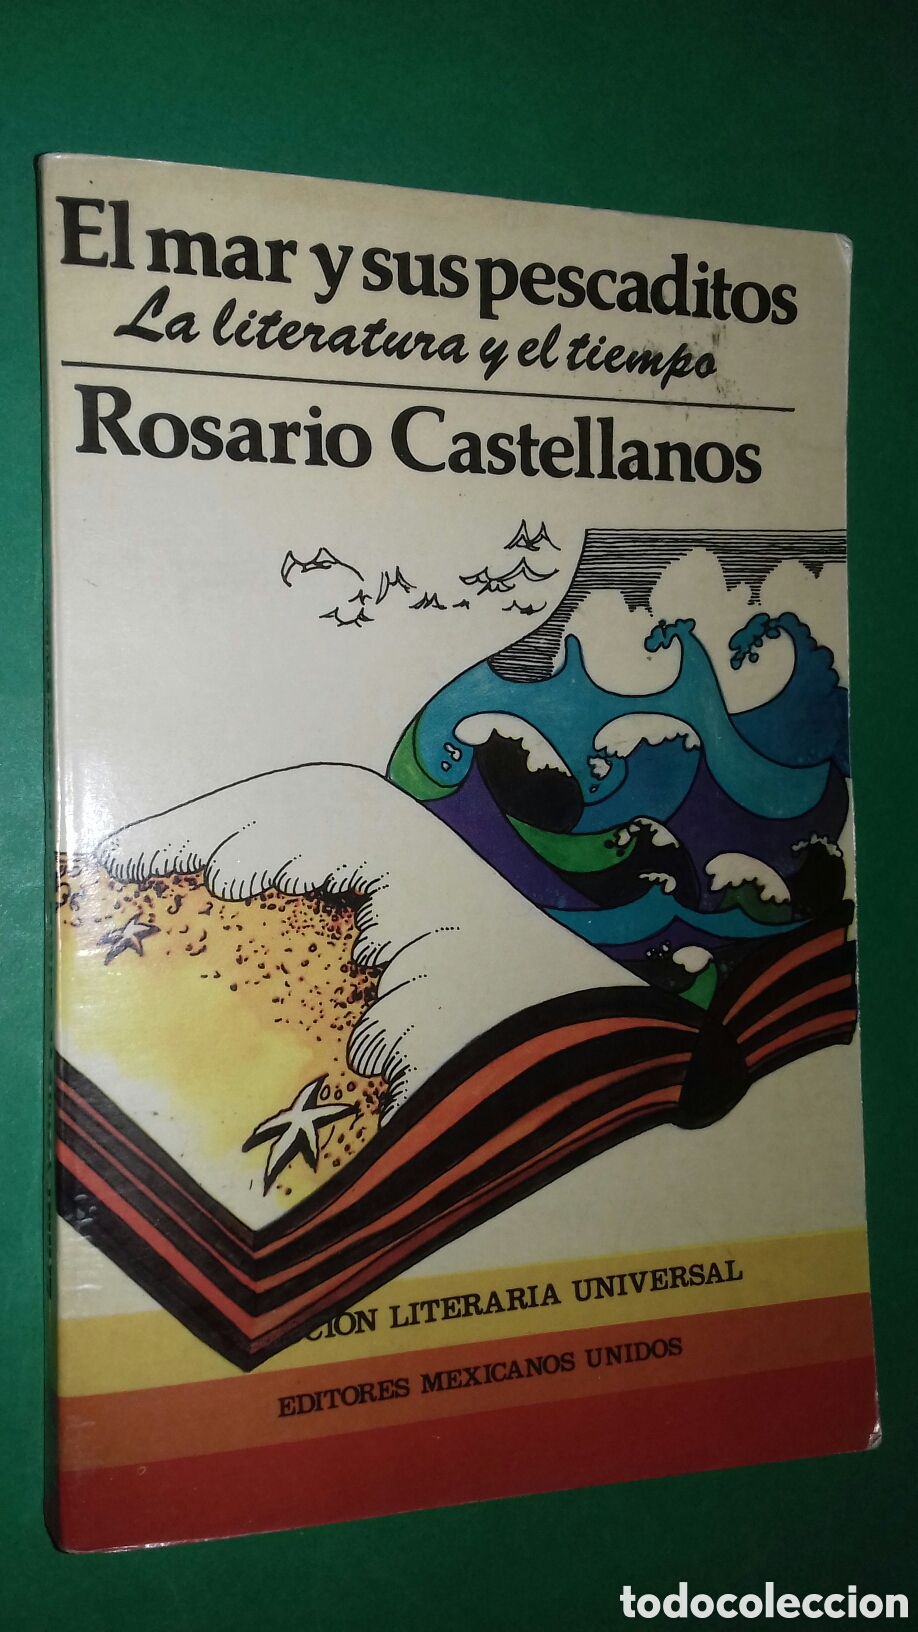 Abiertamente pánico Me gusta rosario castellanos: el mar y sus pescaditos. l - Compra venta en  todocoleccion